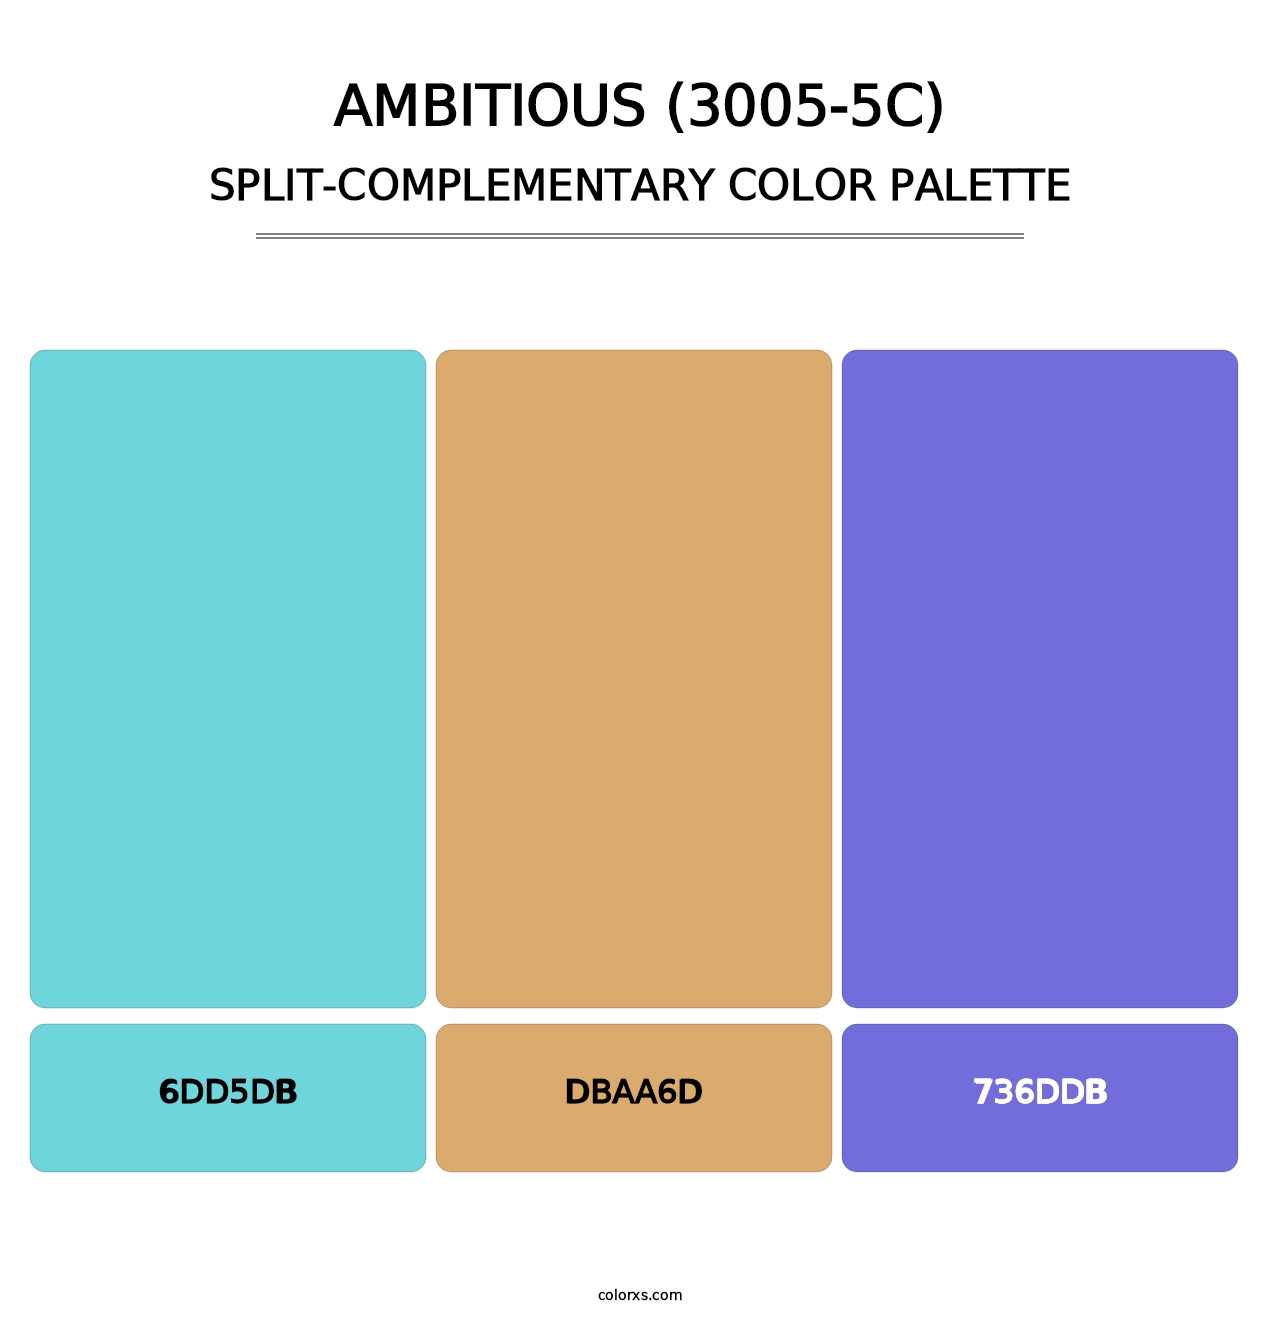 Ambitious (3005-5C) - Split-Complementary Color Palette